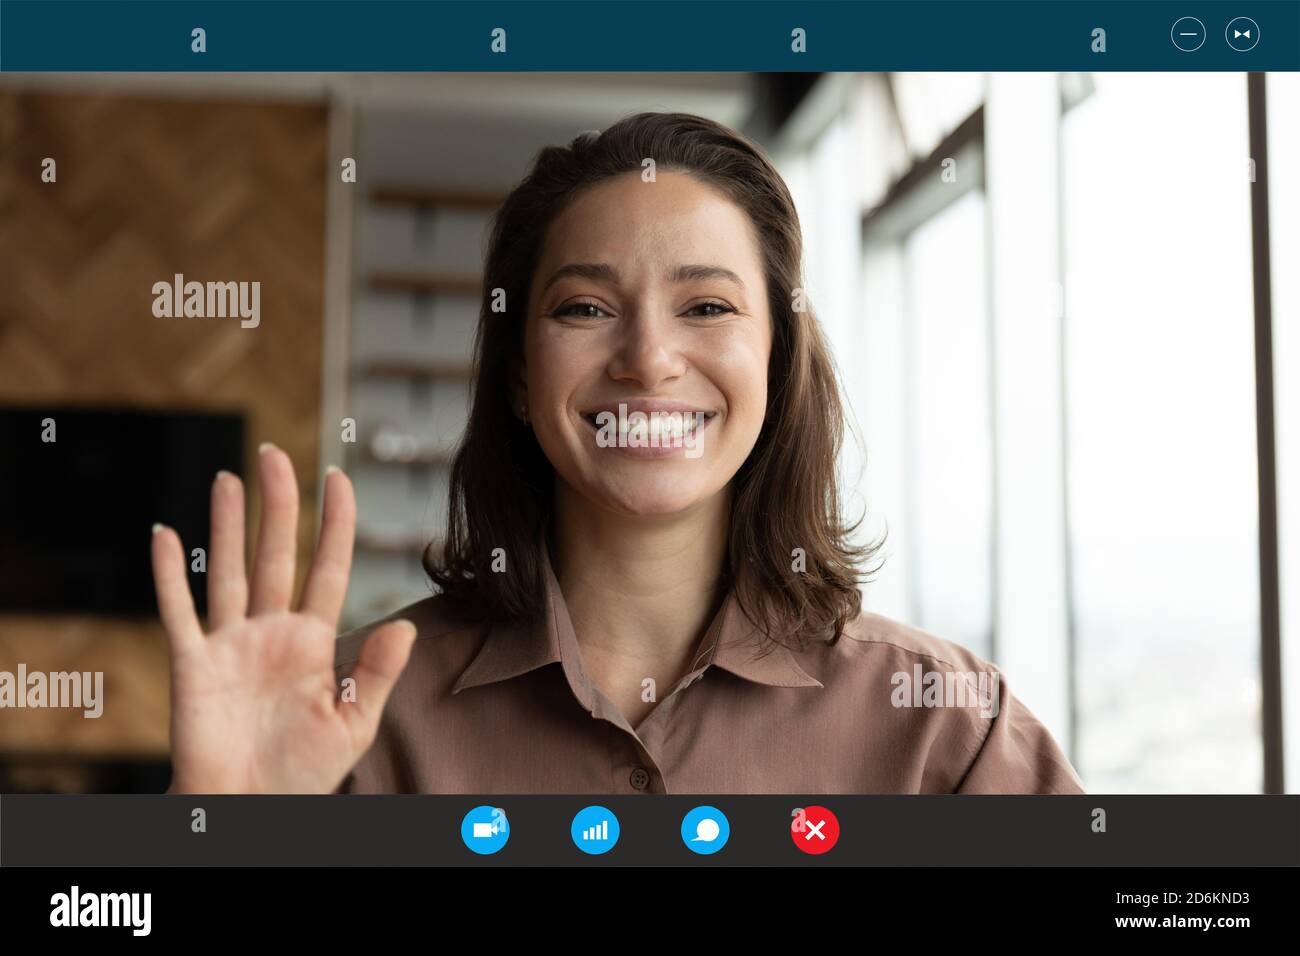 Kopfaufnahme Porträt Bildschirm Ansicht lächelnde Frau winkende Hand Stockfoto